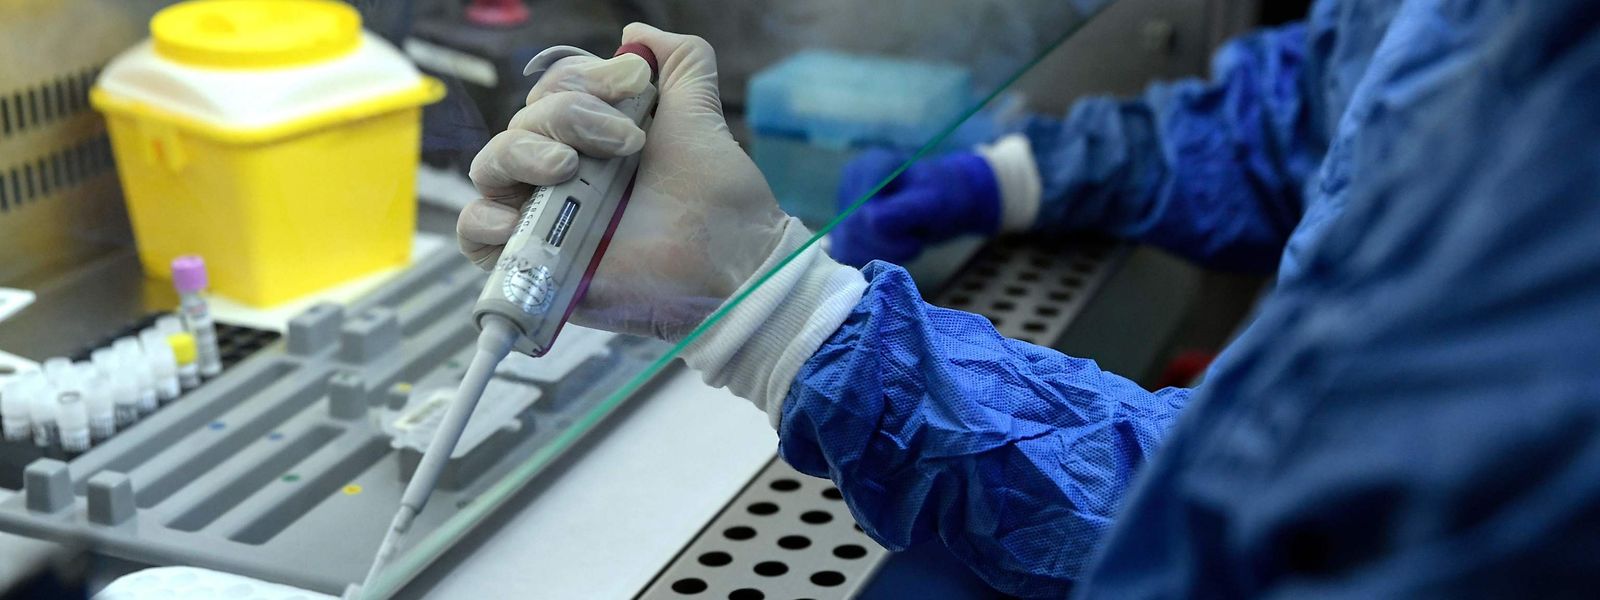 Die sogenannten PCR-Tests (Polymerase chain reaction) sind im späteren Krankheitsverlauf mit gewissen Unsicherheiten behaftet.